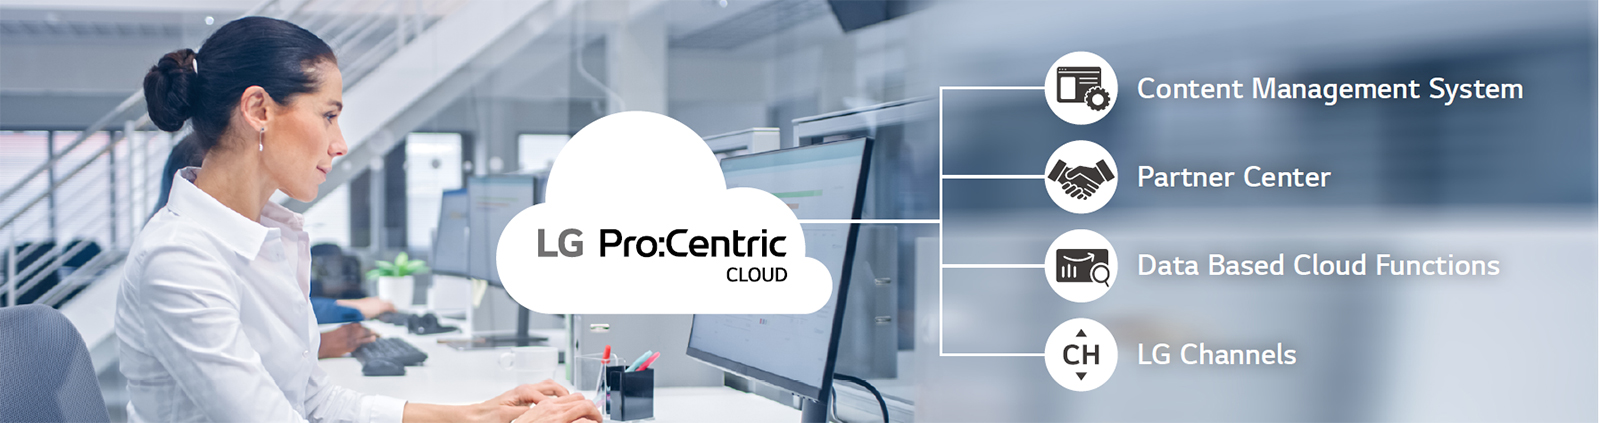 Pro: Centric Cloud 